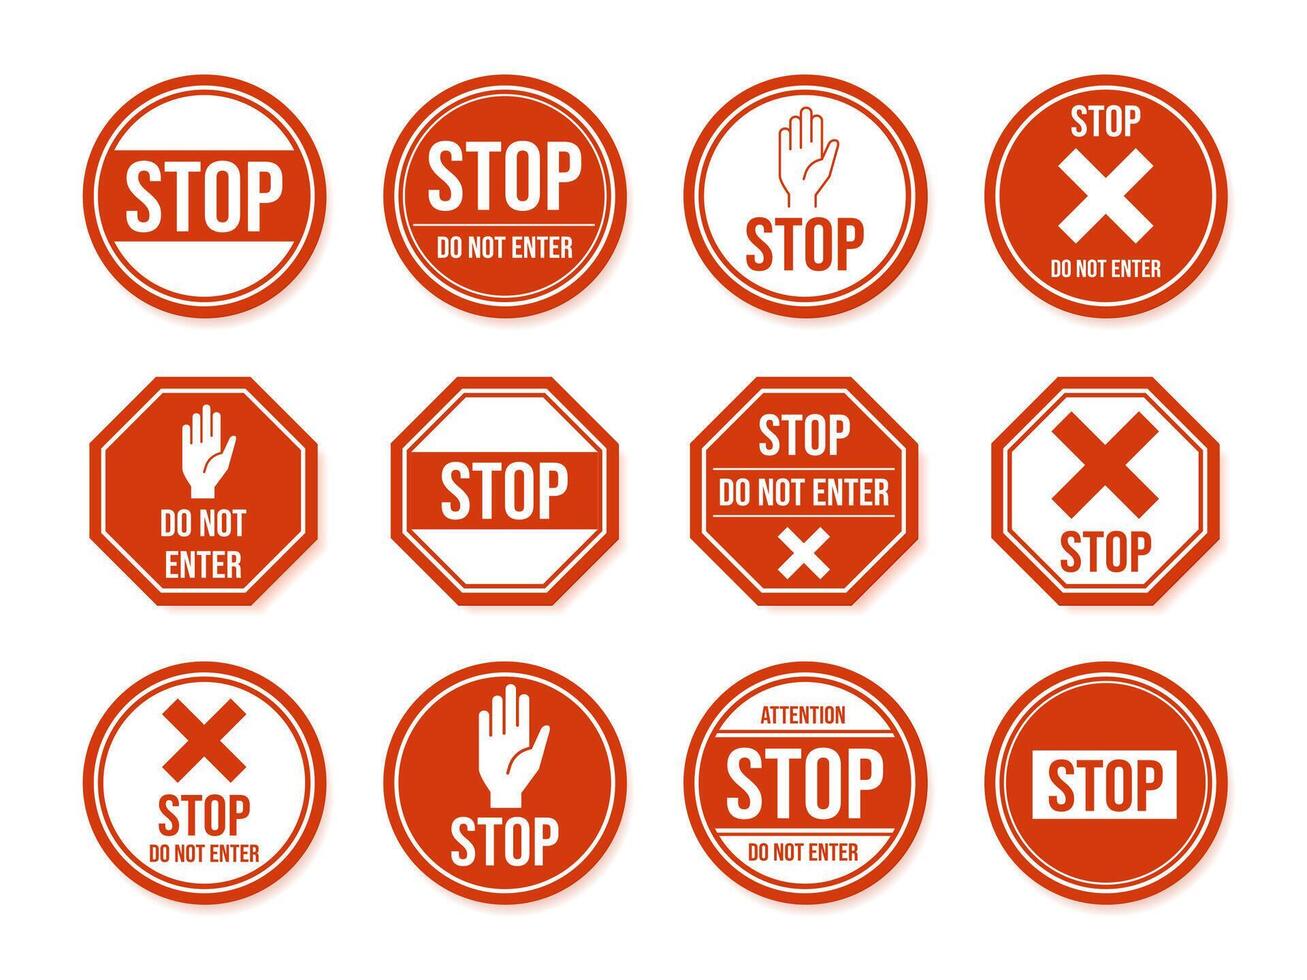 sluta väg tecken. trafik väg sluta symbol, farlig, begränsad urban och motorväg symboler, varning riktning tecken vektor isolerat ikon uppsättning